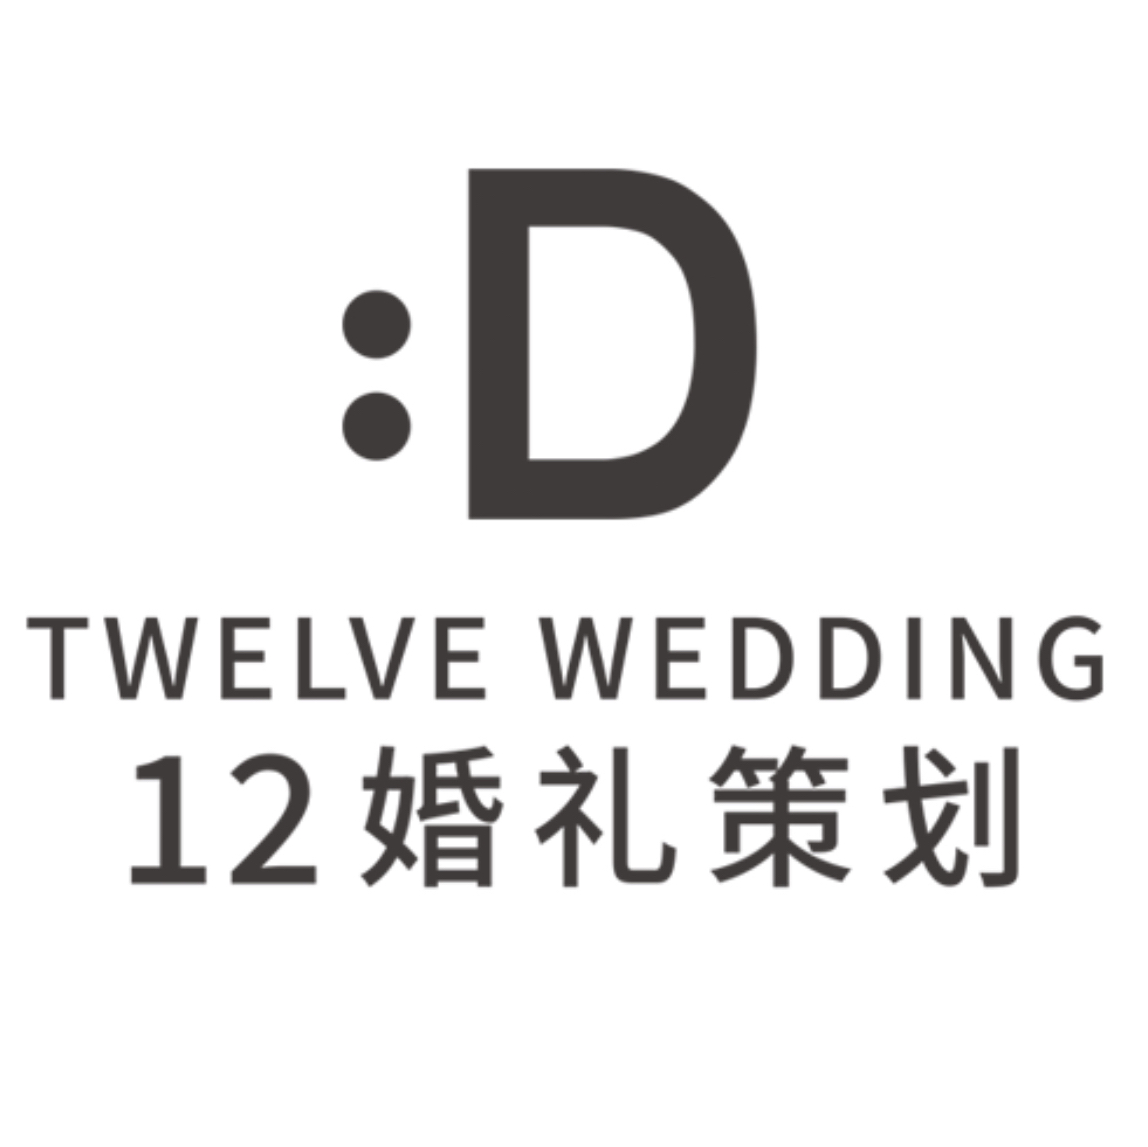 12婚礼策划